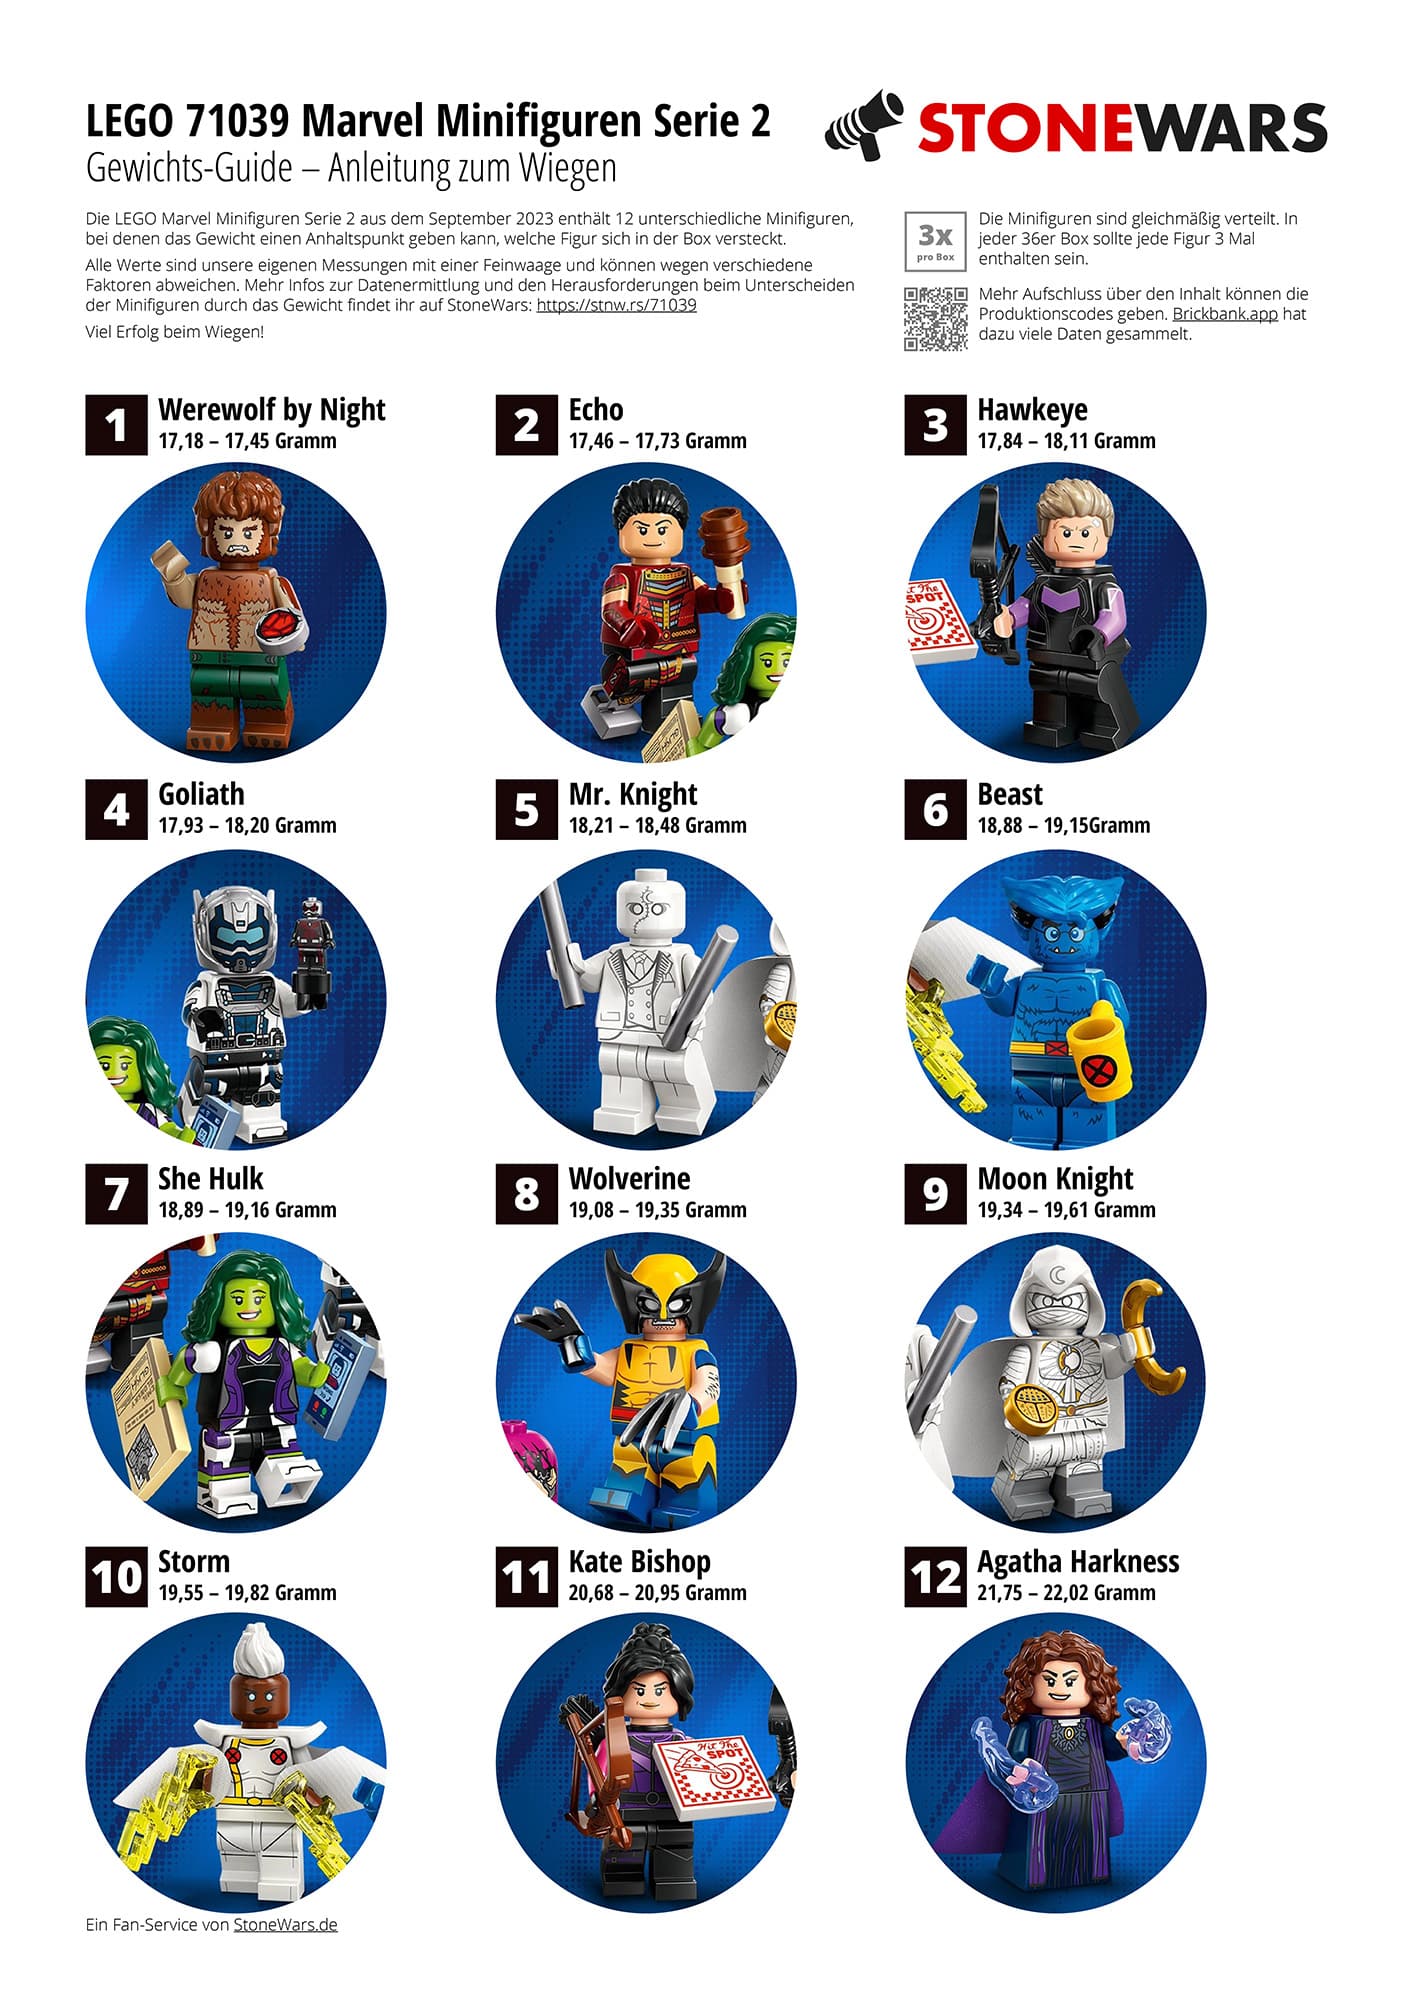 LEGO 71039 Marvel Minifiguren Stonewars Gewichts Guide 01